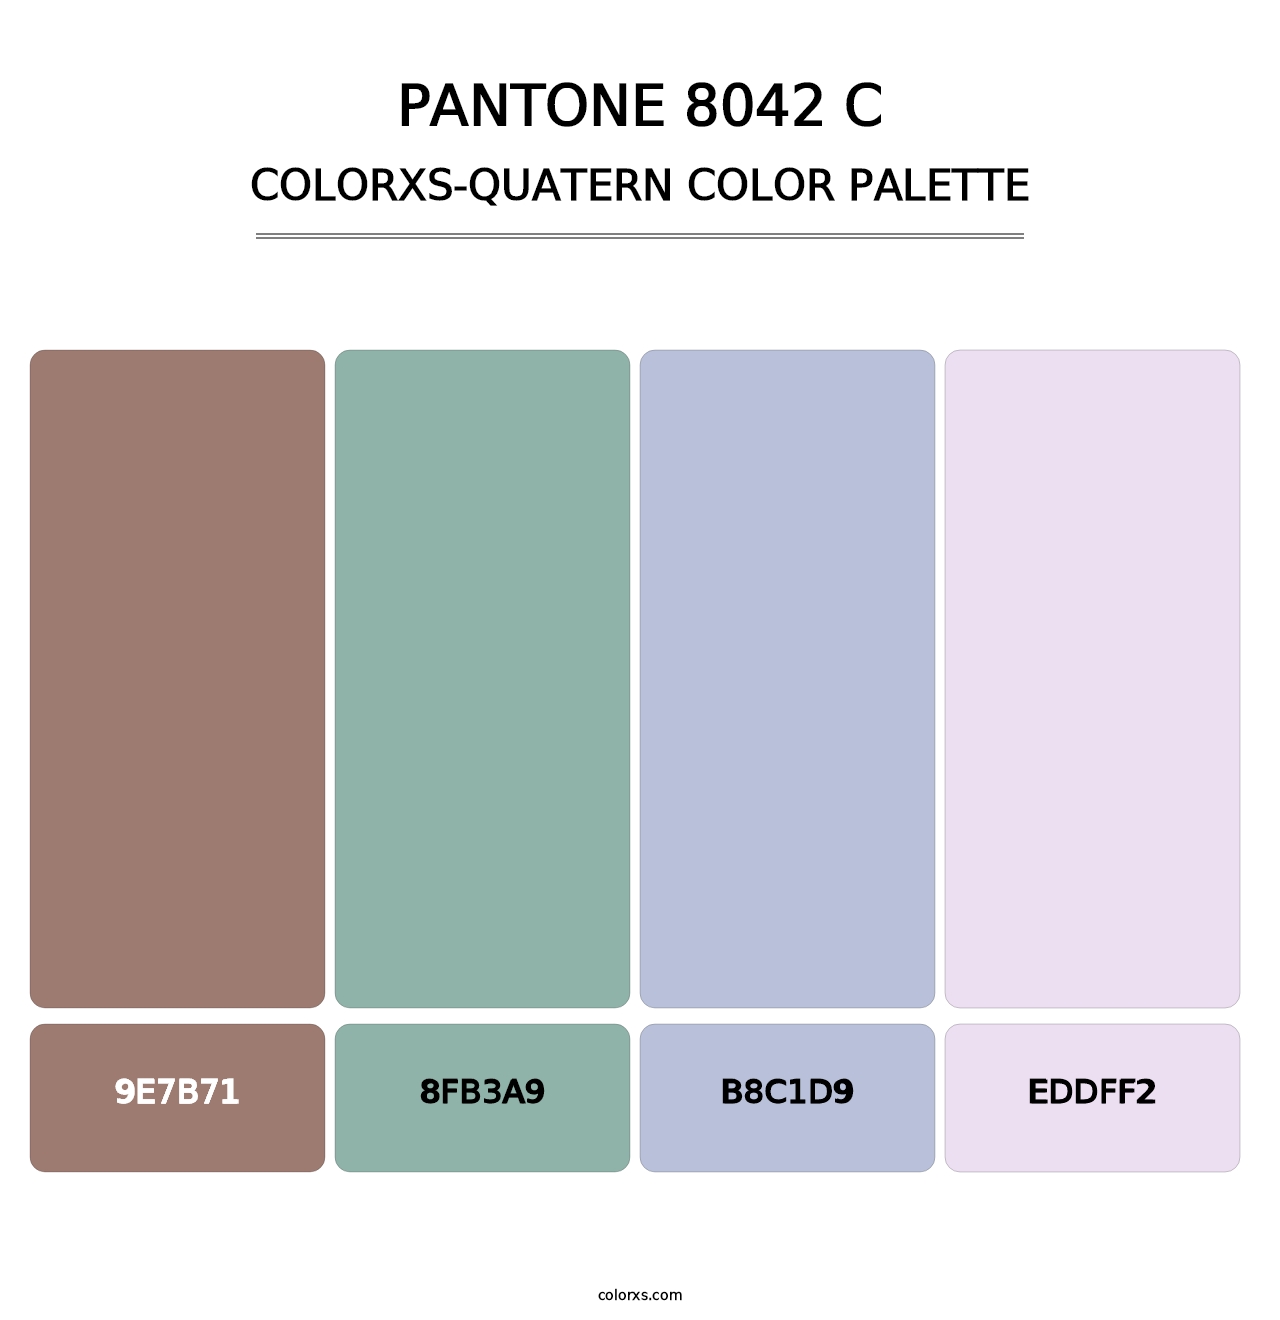 PANTONE 8042 C - Colorxs Quatern Palette